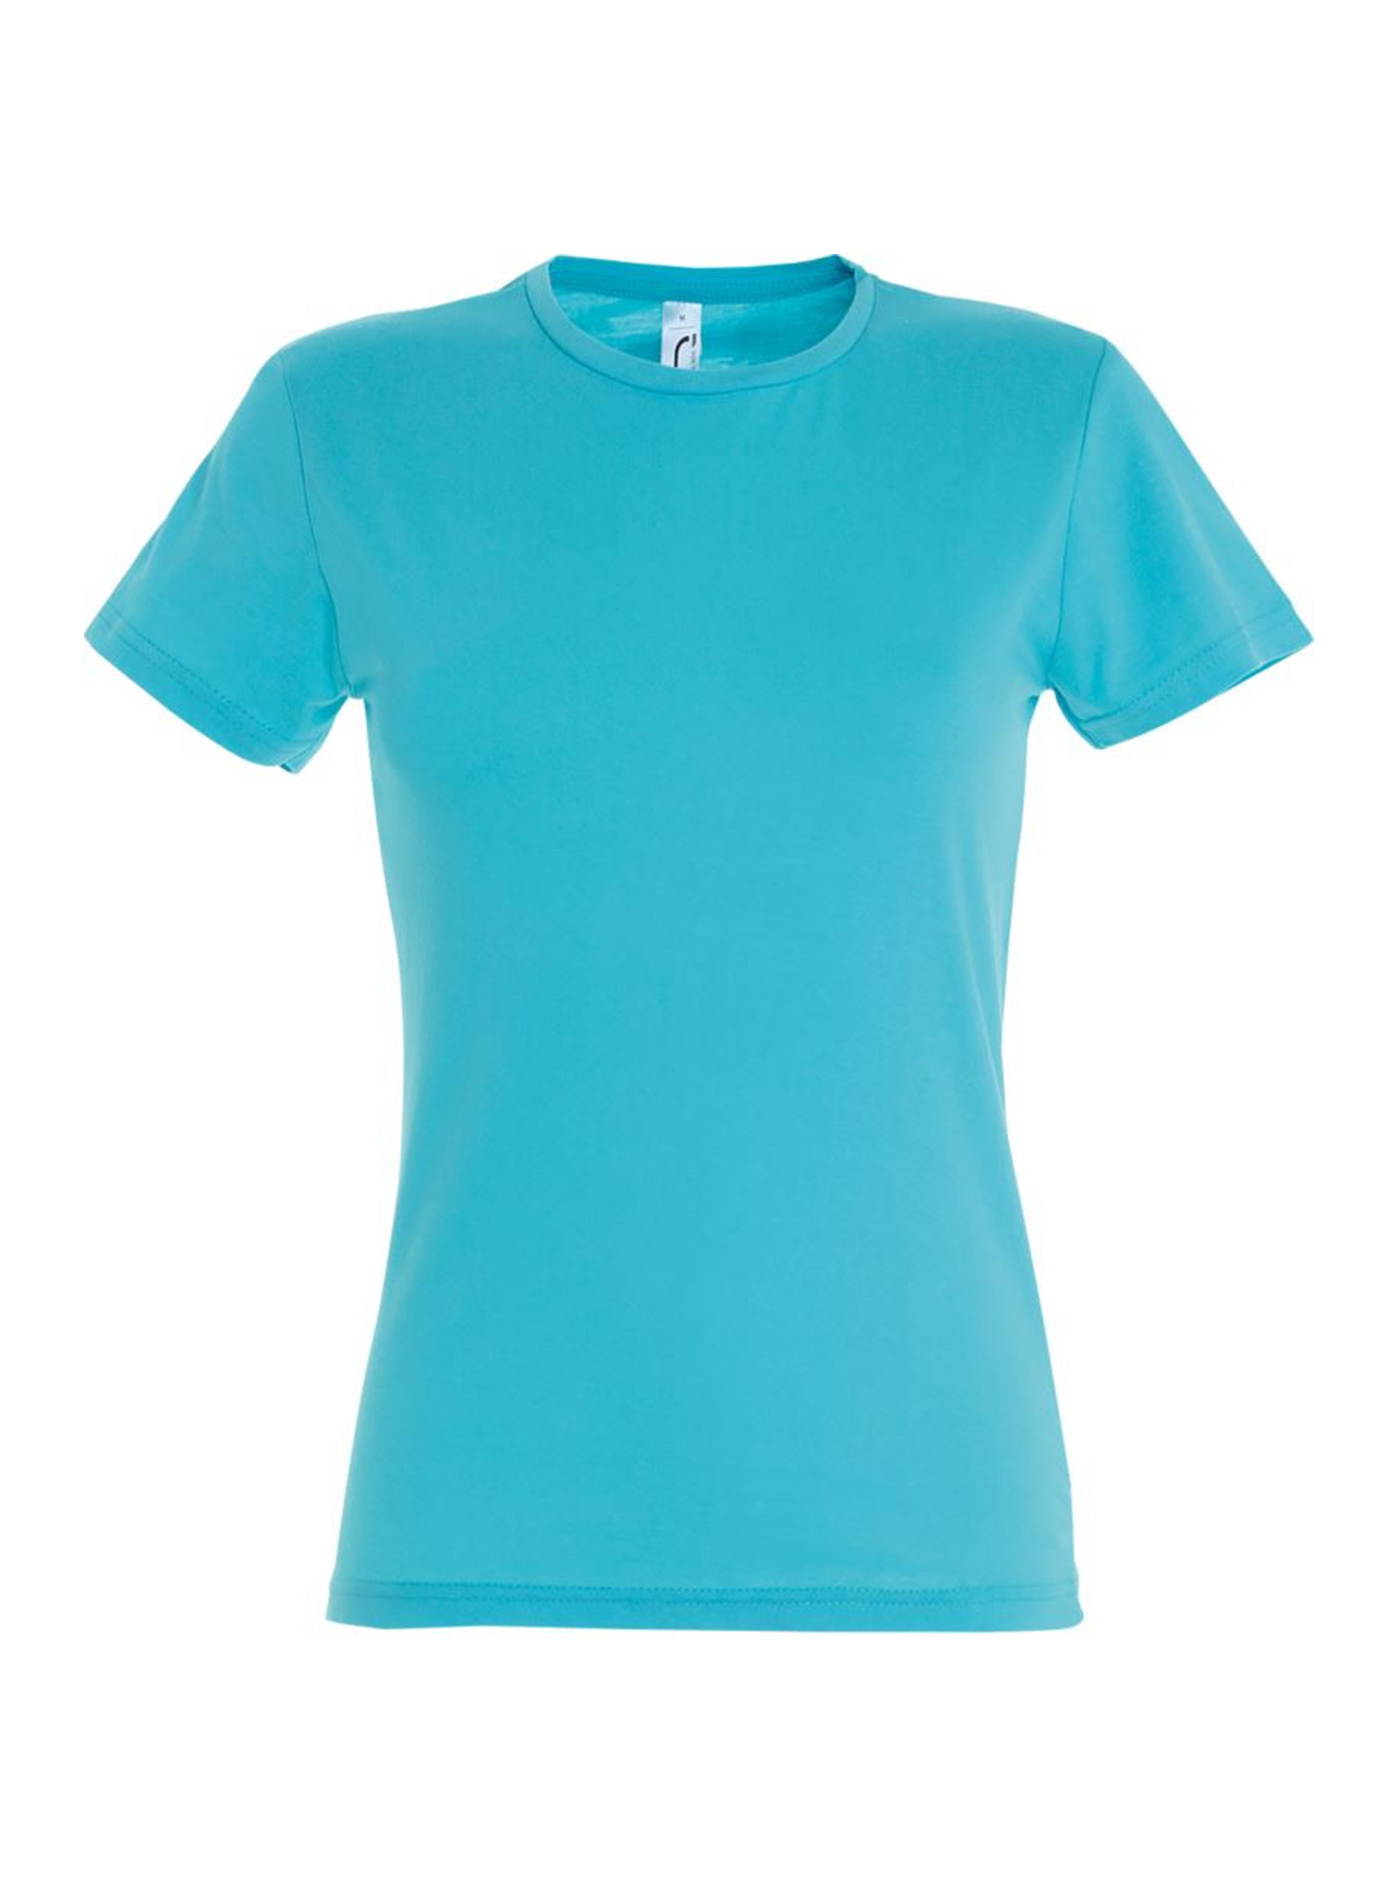 Dámské tričko SOL'S Miss - Azurově modrá žíhaná M